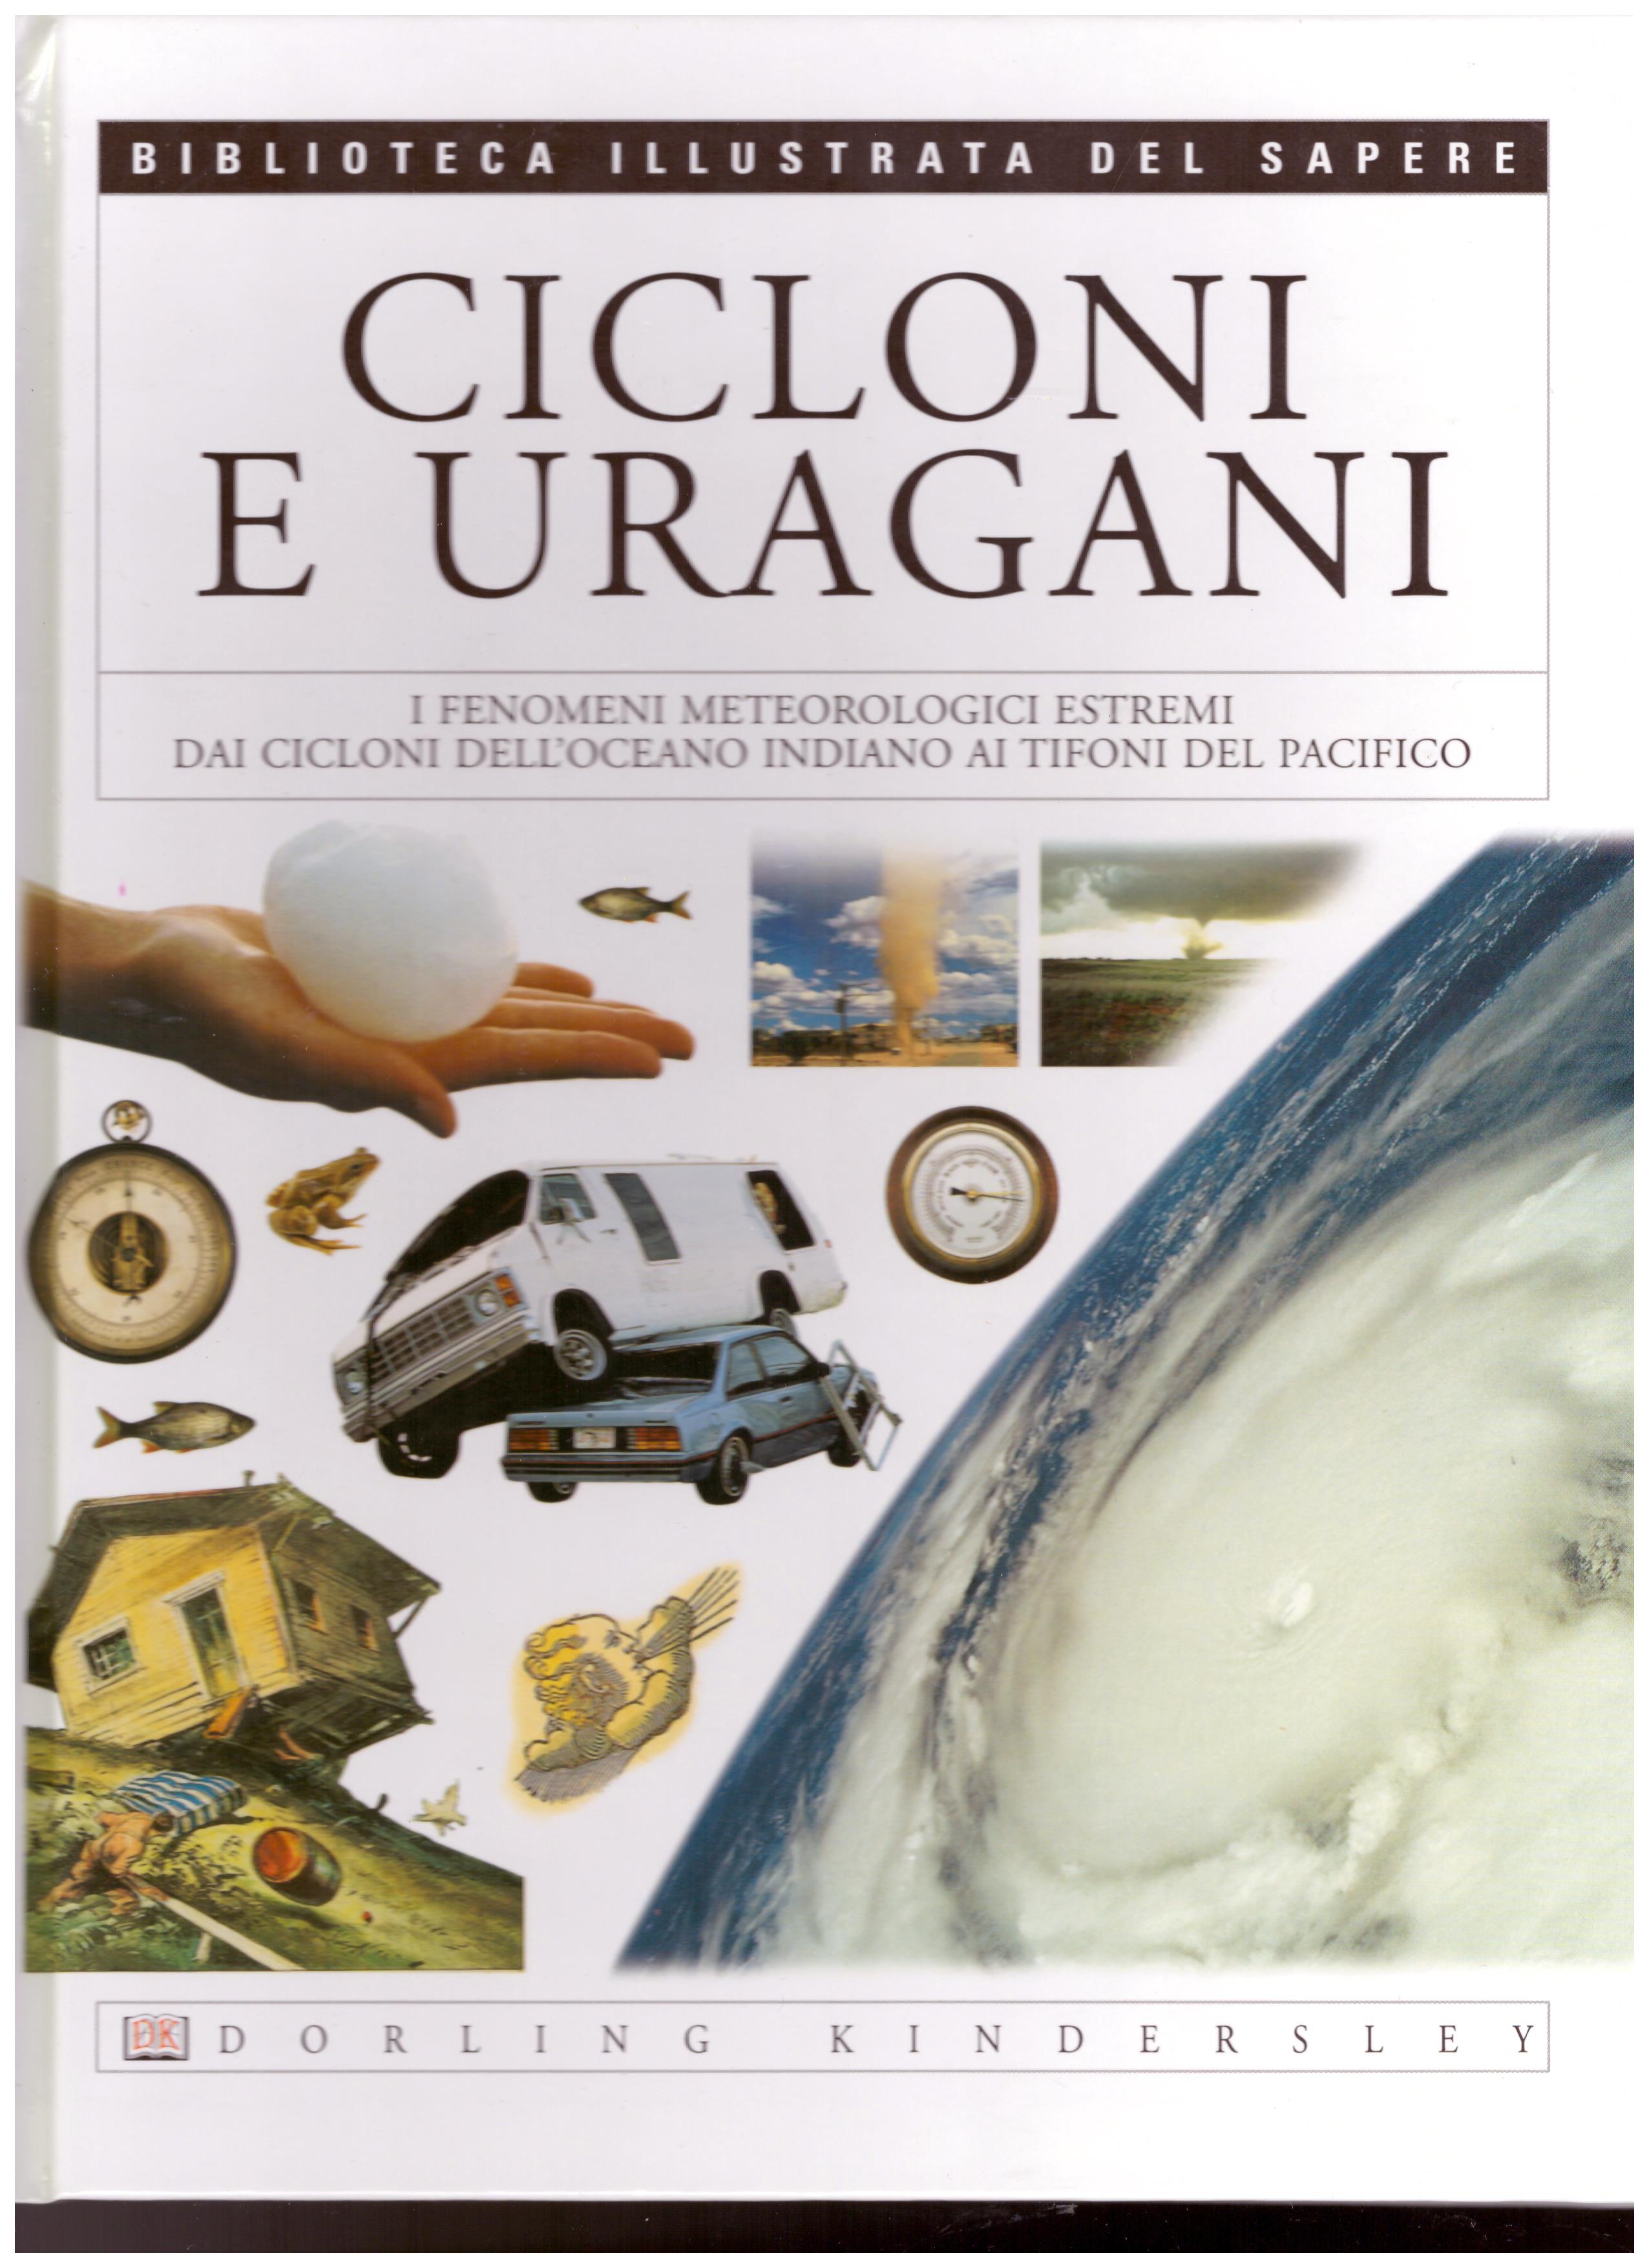 Titolo: Biblioteca Illustrata del Sapere, Cicloni e Uragani  Autore :AA.VV.  Editore: Dorling Kindersley 2004 Bologna